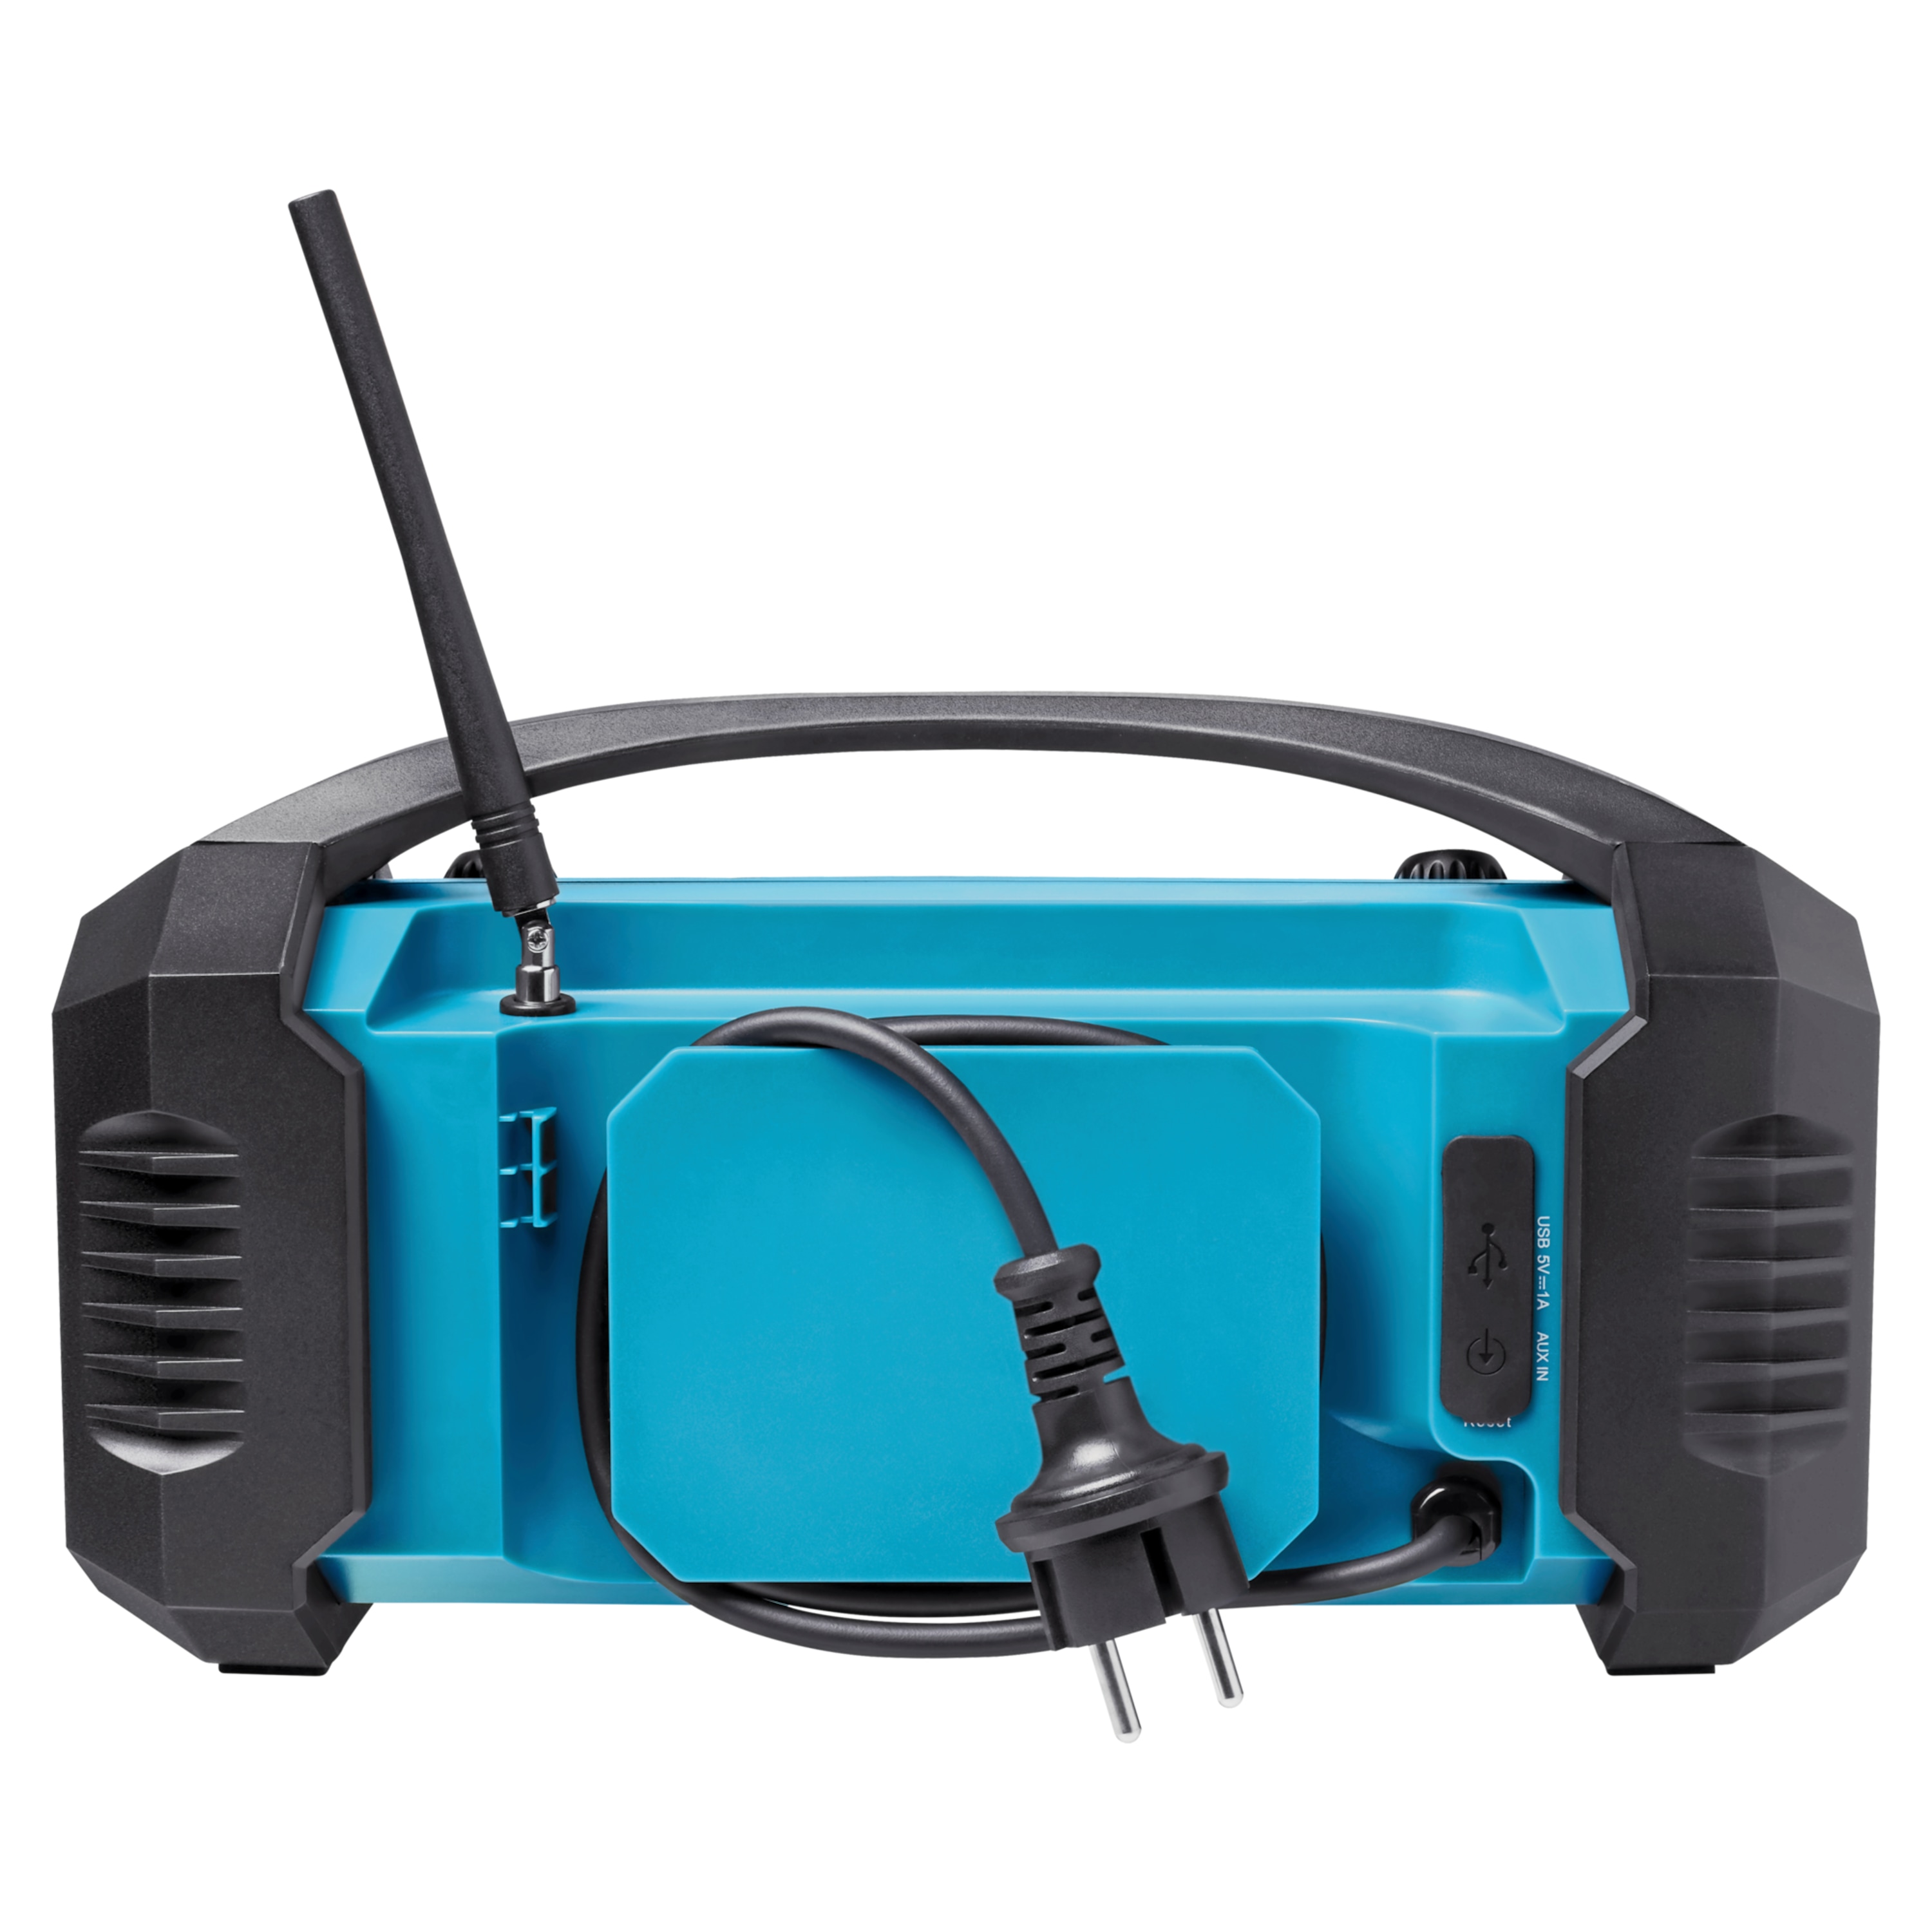 MEDION® LIFE® E66050 DAB+/Bluetooth®-Baustellenradio, ideal für Baustellen, Garten oder Camping, IP54 Schutz gegen Spritzwasser & Staub, 7 Soundeinstellungen, integr. Akku, 15 W RMS